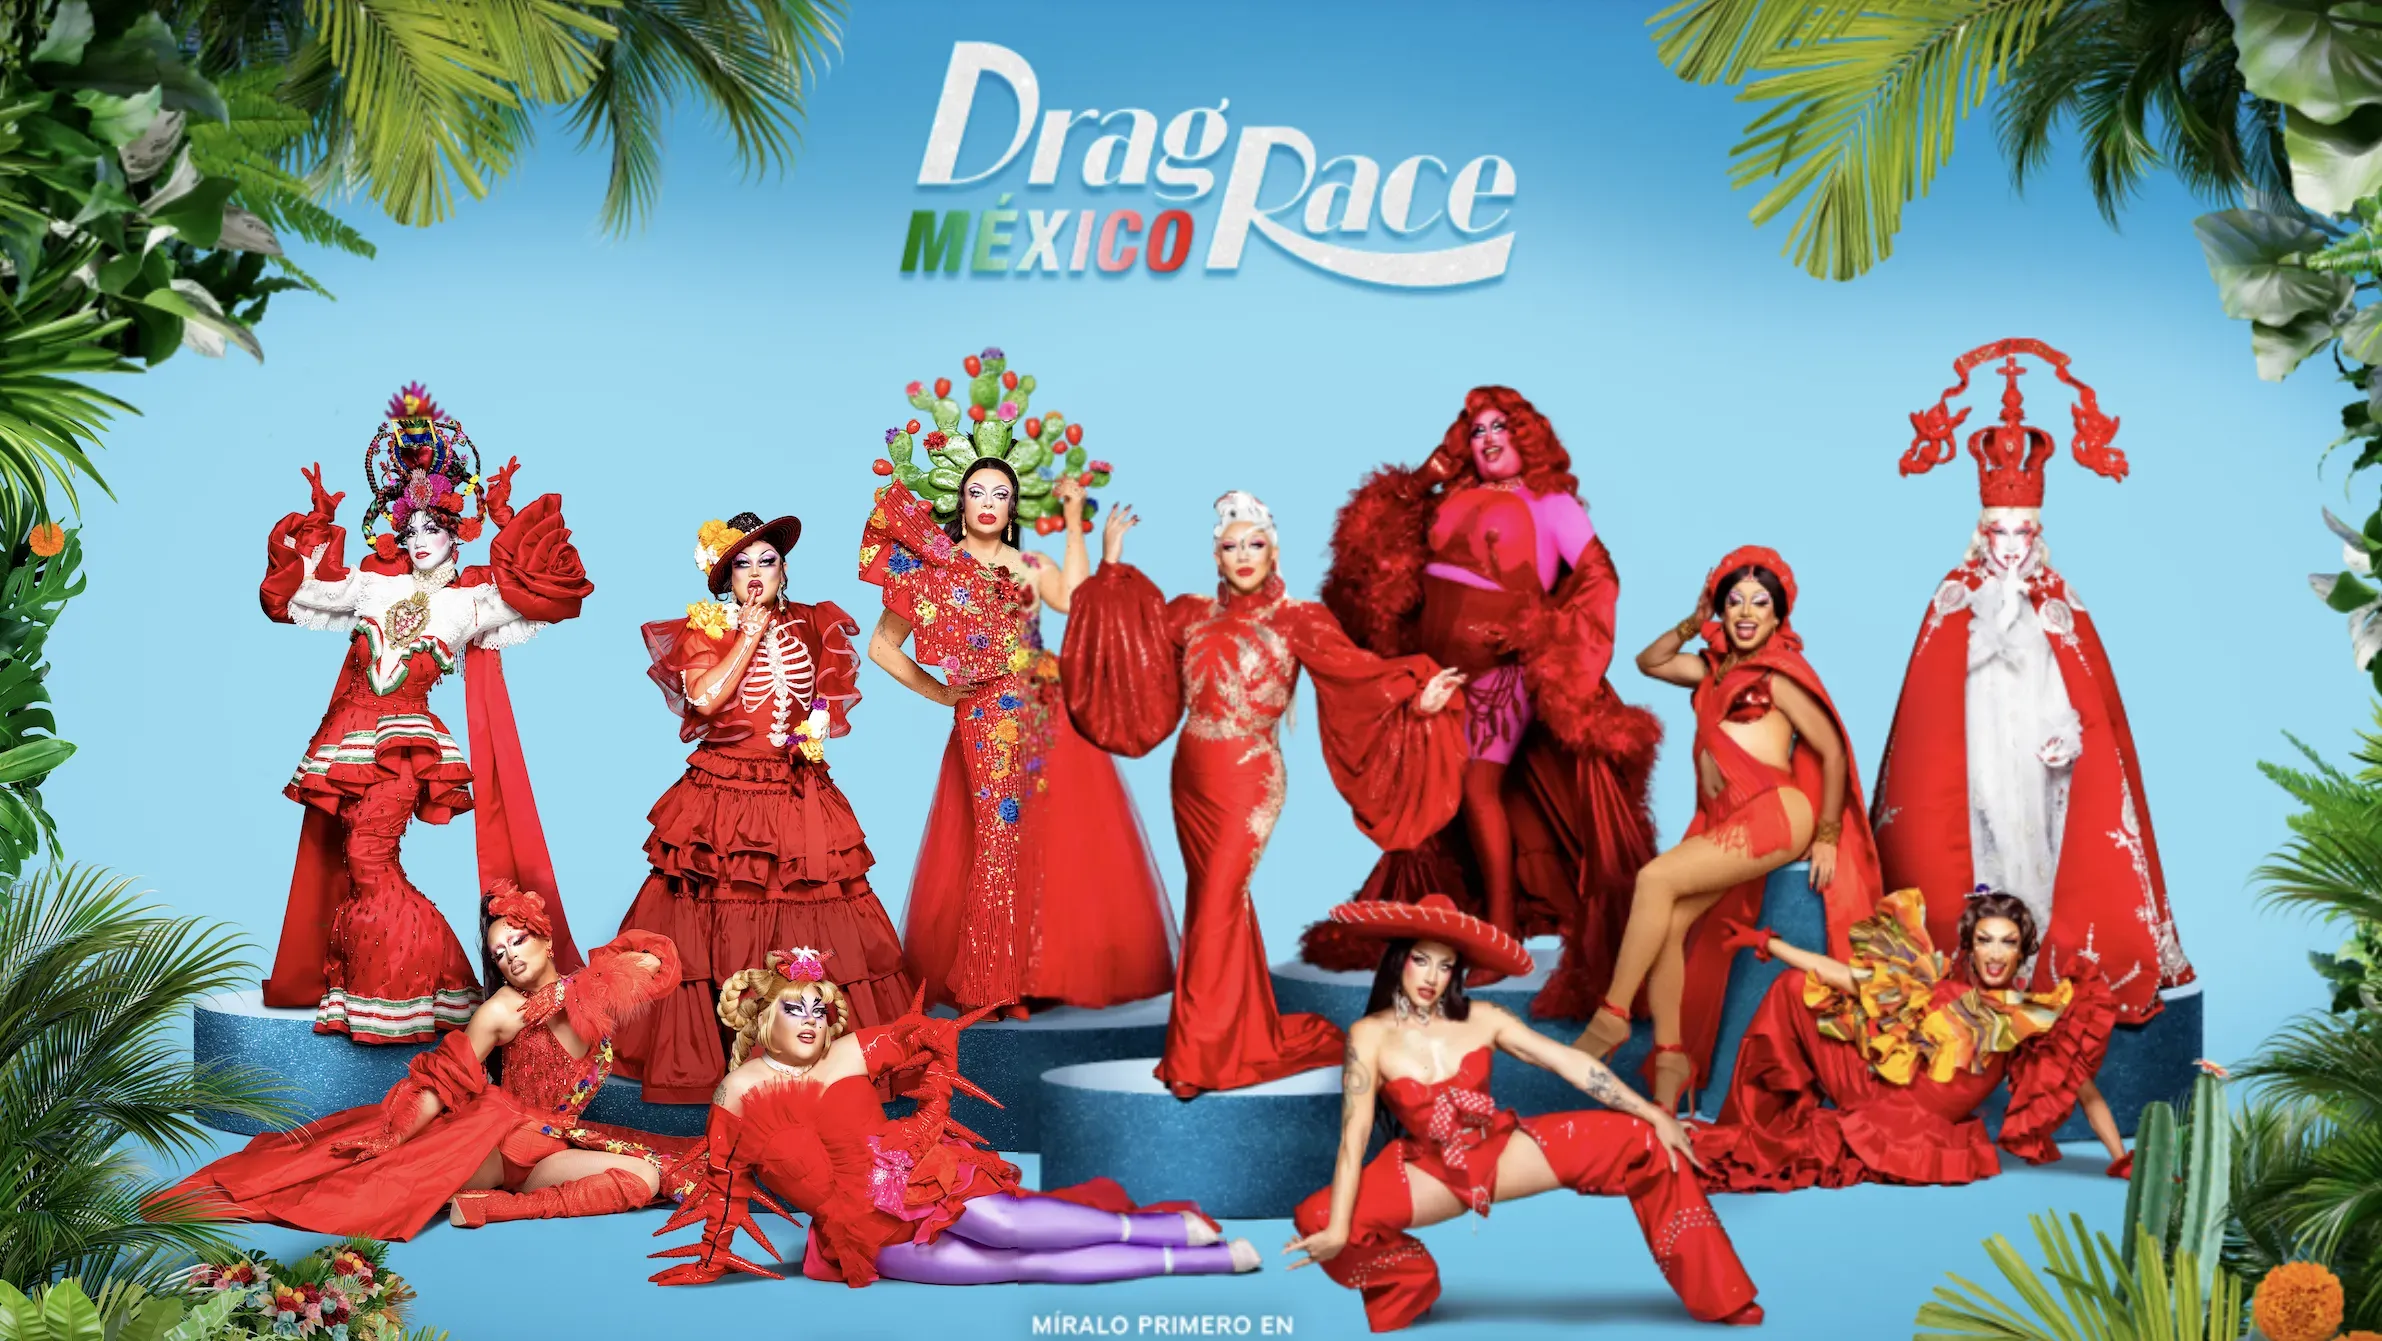 Drag Race México estará disponible desde el 22 de junio. (IMDb)